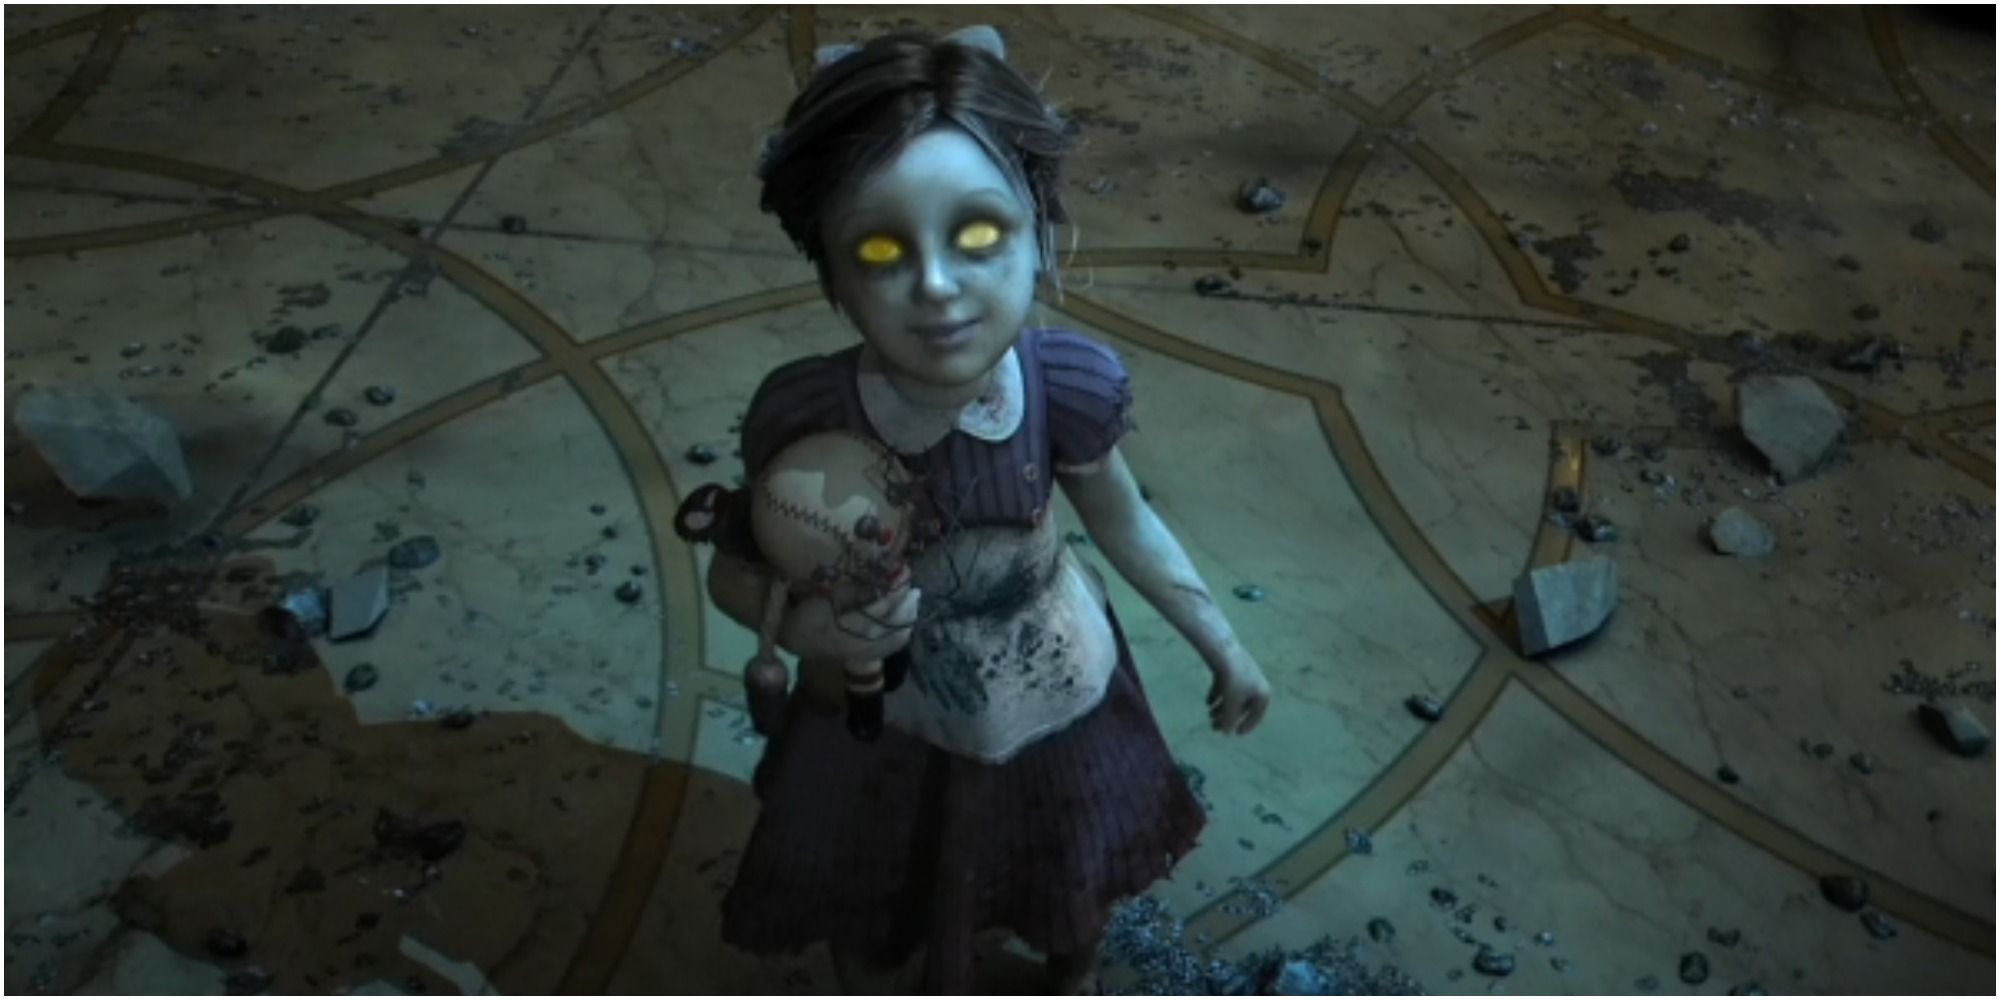 A Little Sister appears in BioShock.